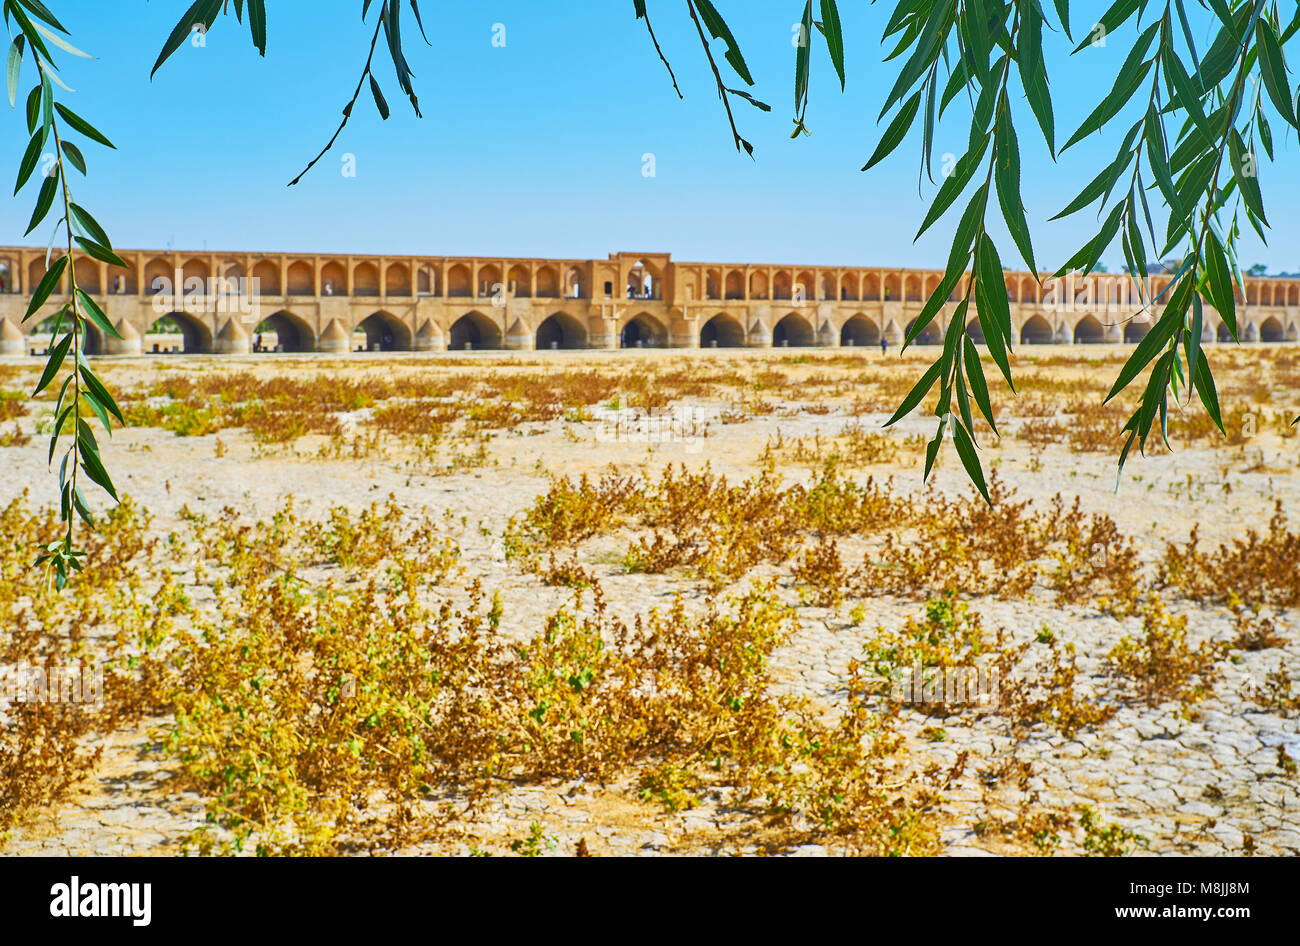 La cité médiévale de Si-O-se-pol bridge à travers les branches de saule vert, Koudak park, Isfahan, Iran. Banque D'Images